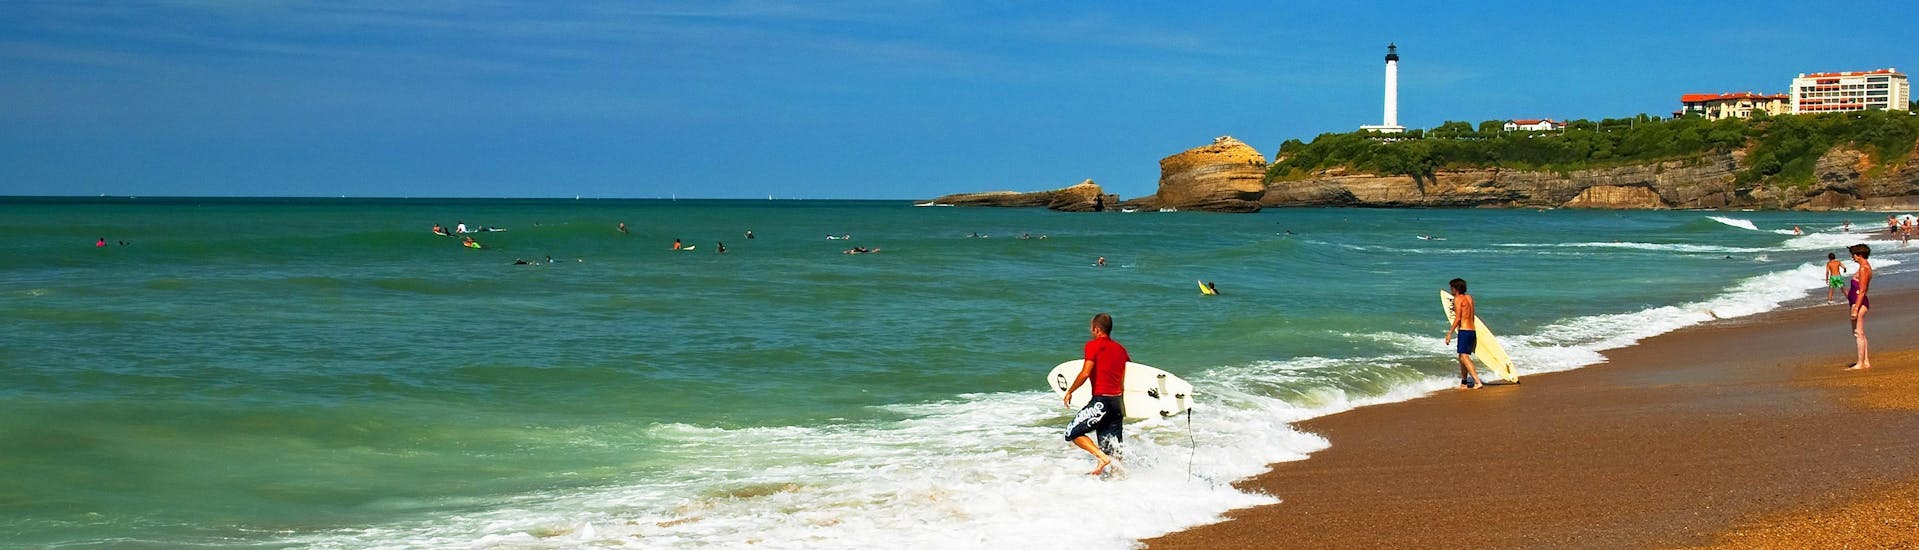 La Côte des Basques: Een jonge vrouw leert surfen.